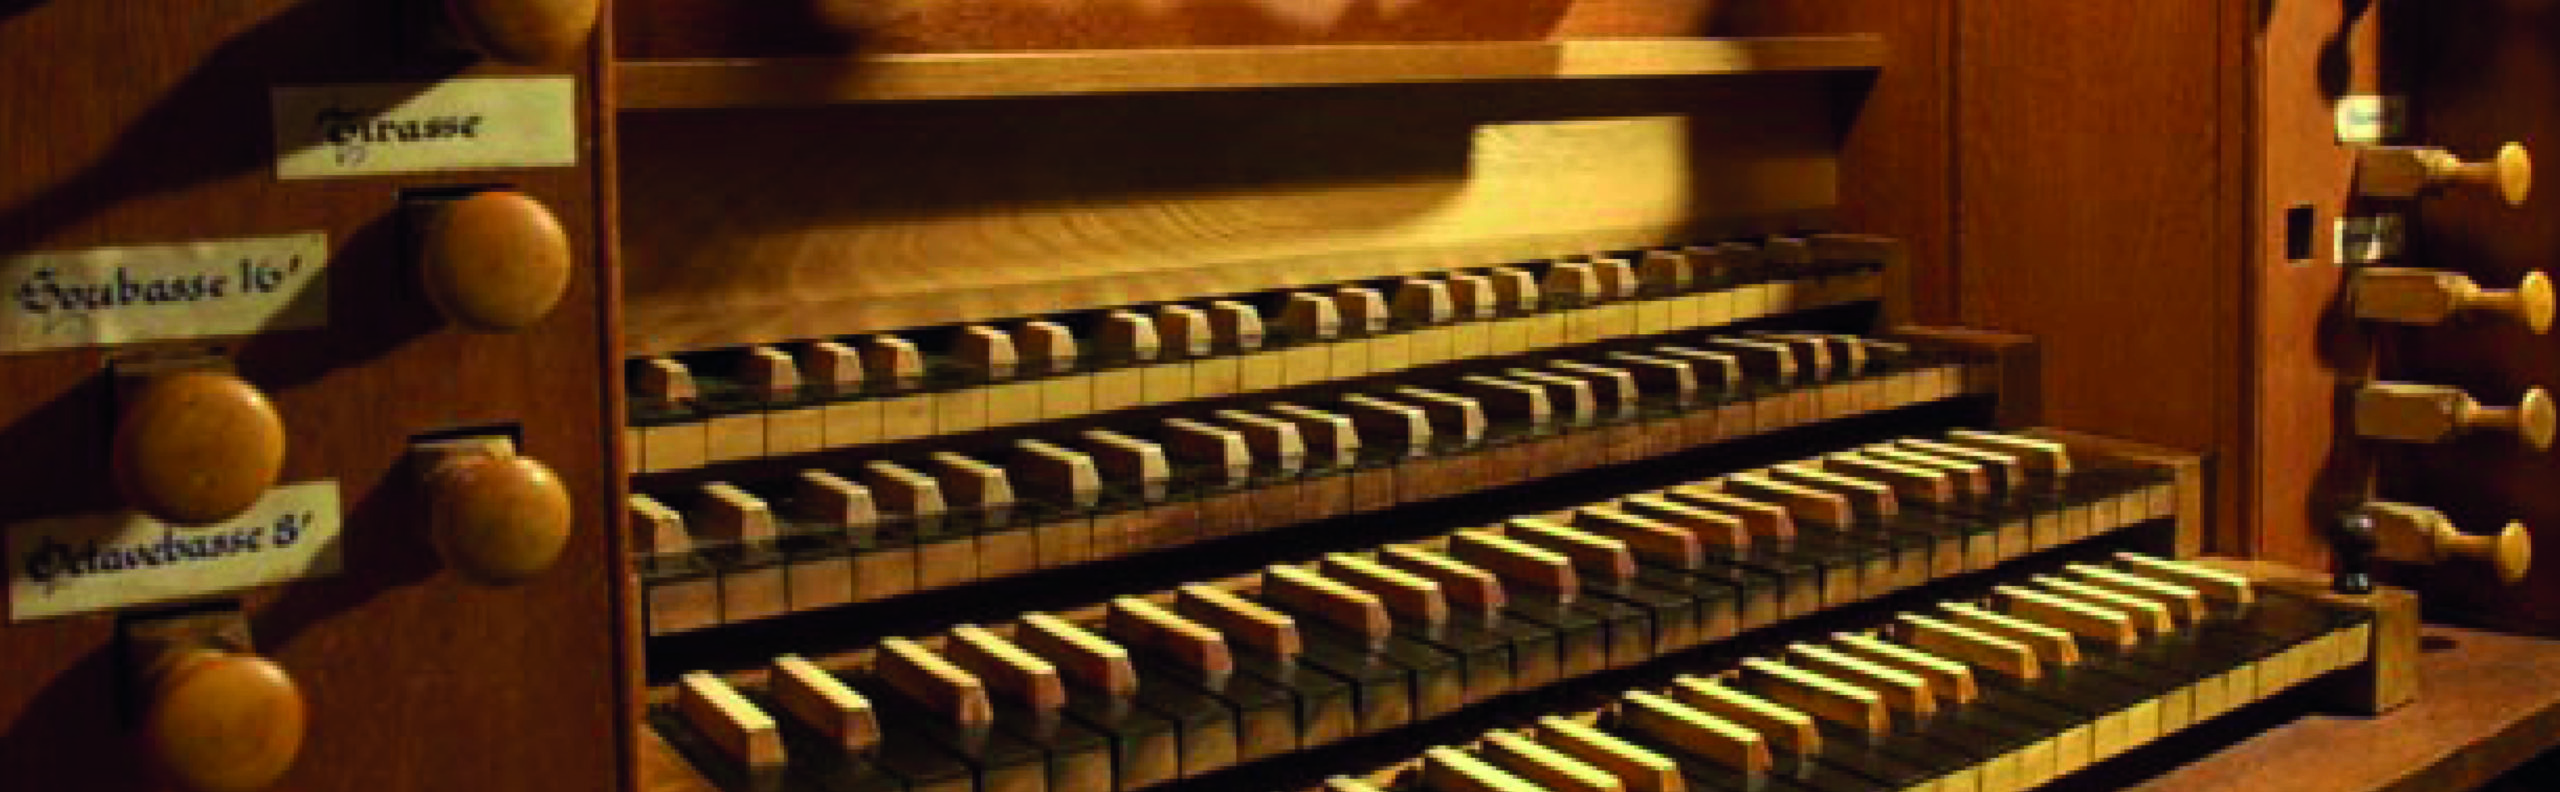 console d'orgue